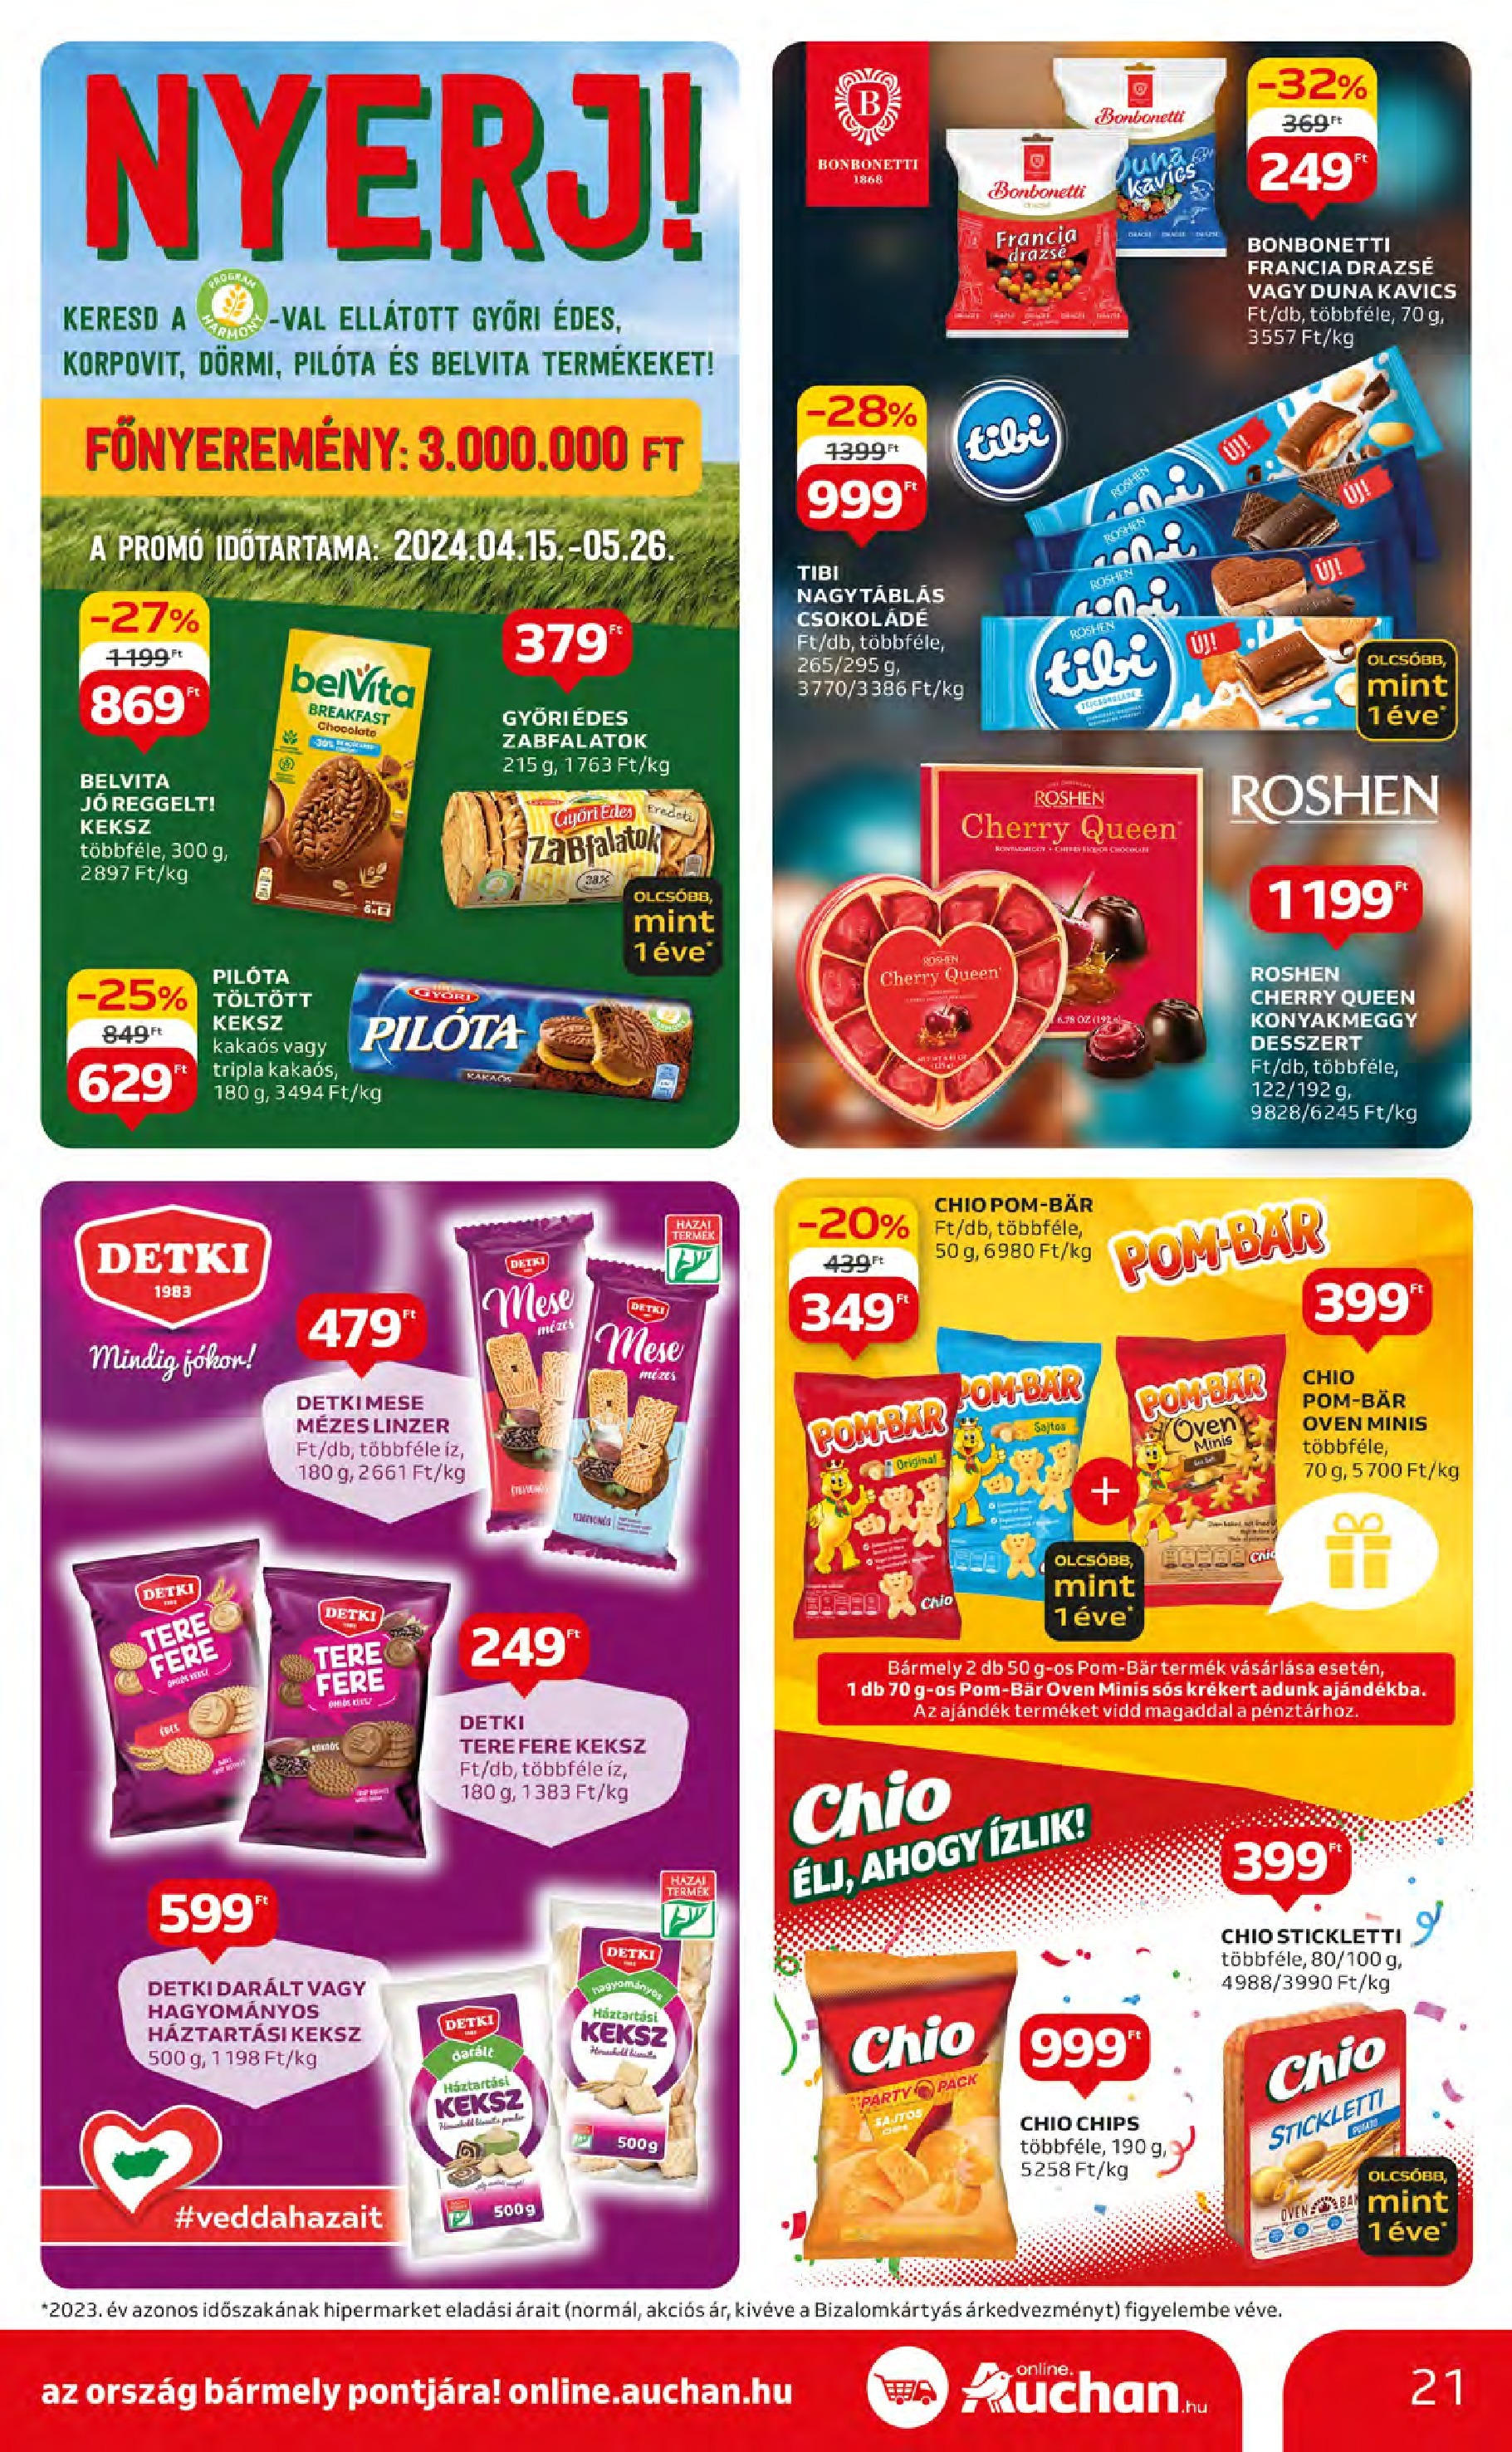 Auchan  Akciós újság - 2024.05.09. -tól/töl > akció, szórólap 🛍️ | Oldal: 21 | Termékek: Chips, Kavics, Csokoládé, Keksz